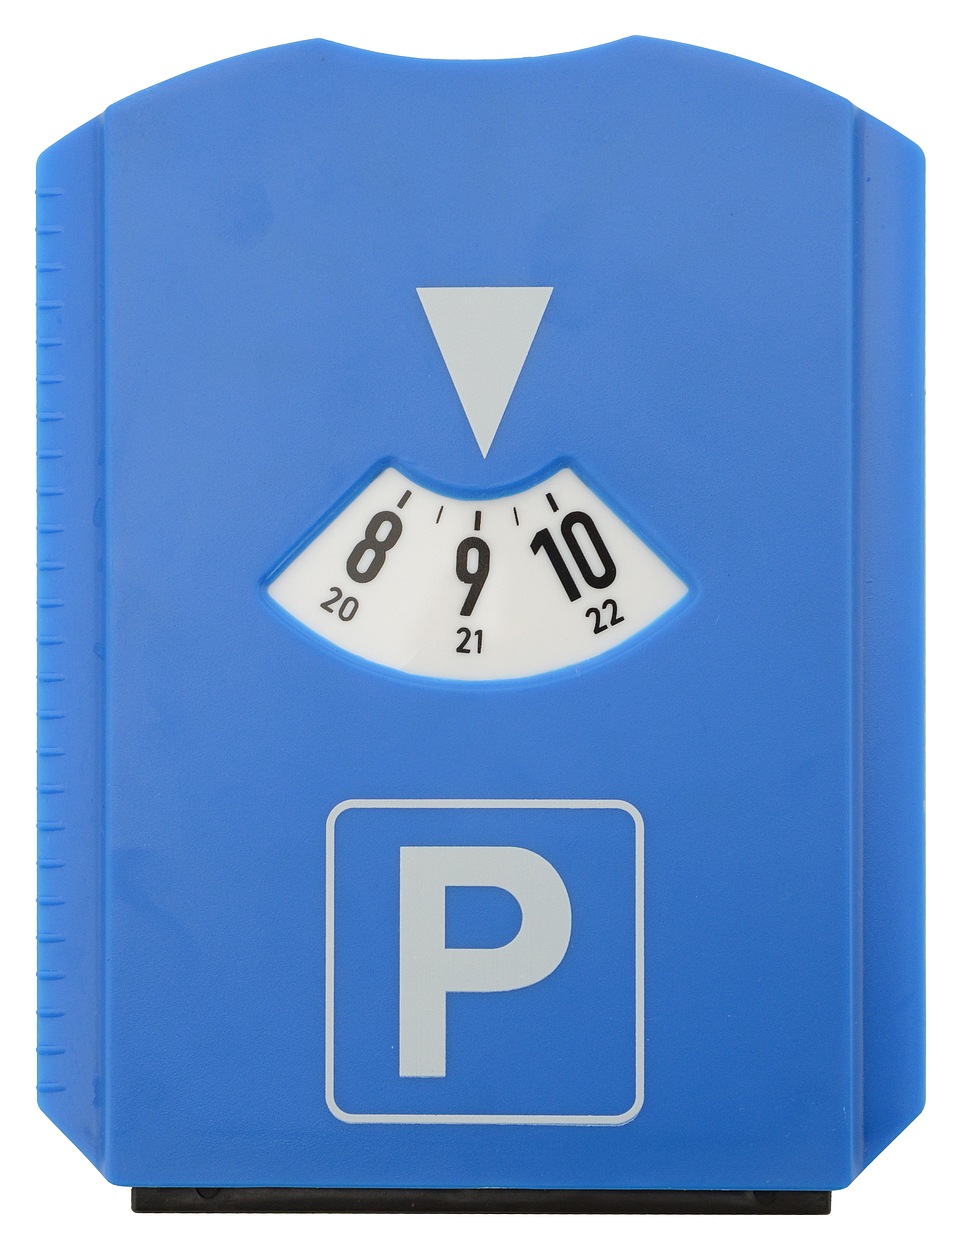 Parkovací hodiny s měřičem dezénu